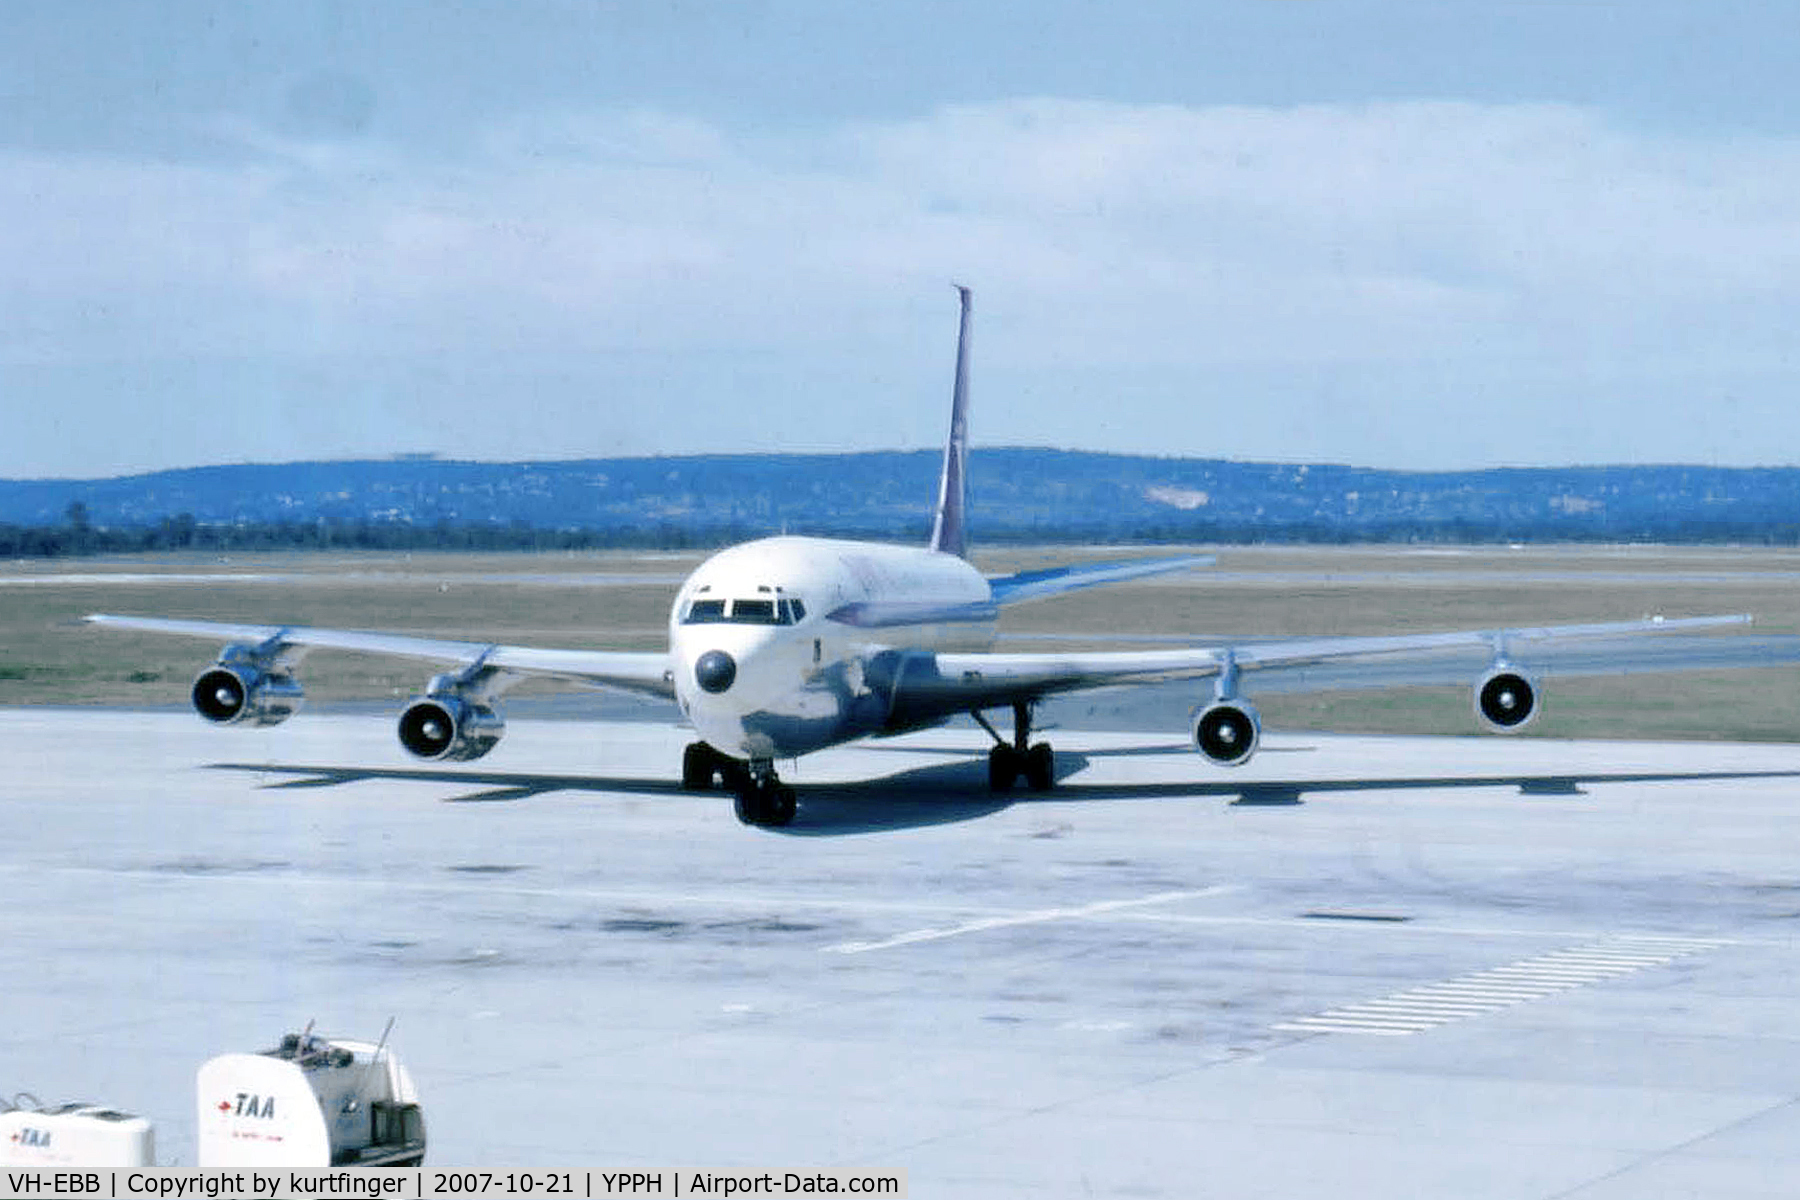 VH-EBB, 2002 Airbus A330-201 C/N 0522, Boeing 707-138B Qantas VH-EBB Perth Airport circa 1962.